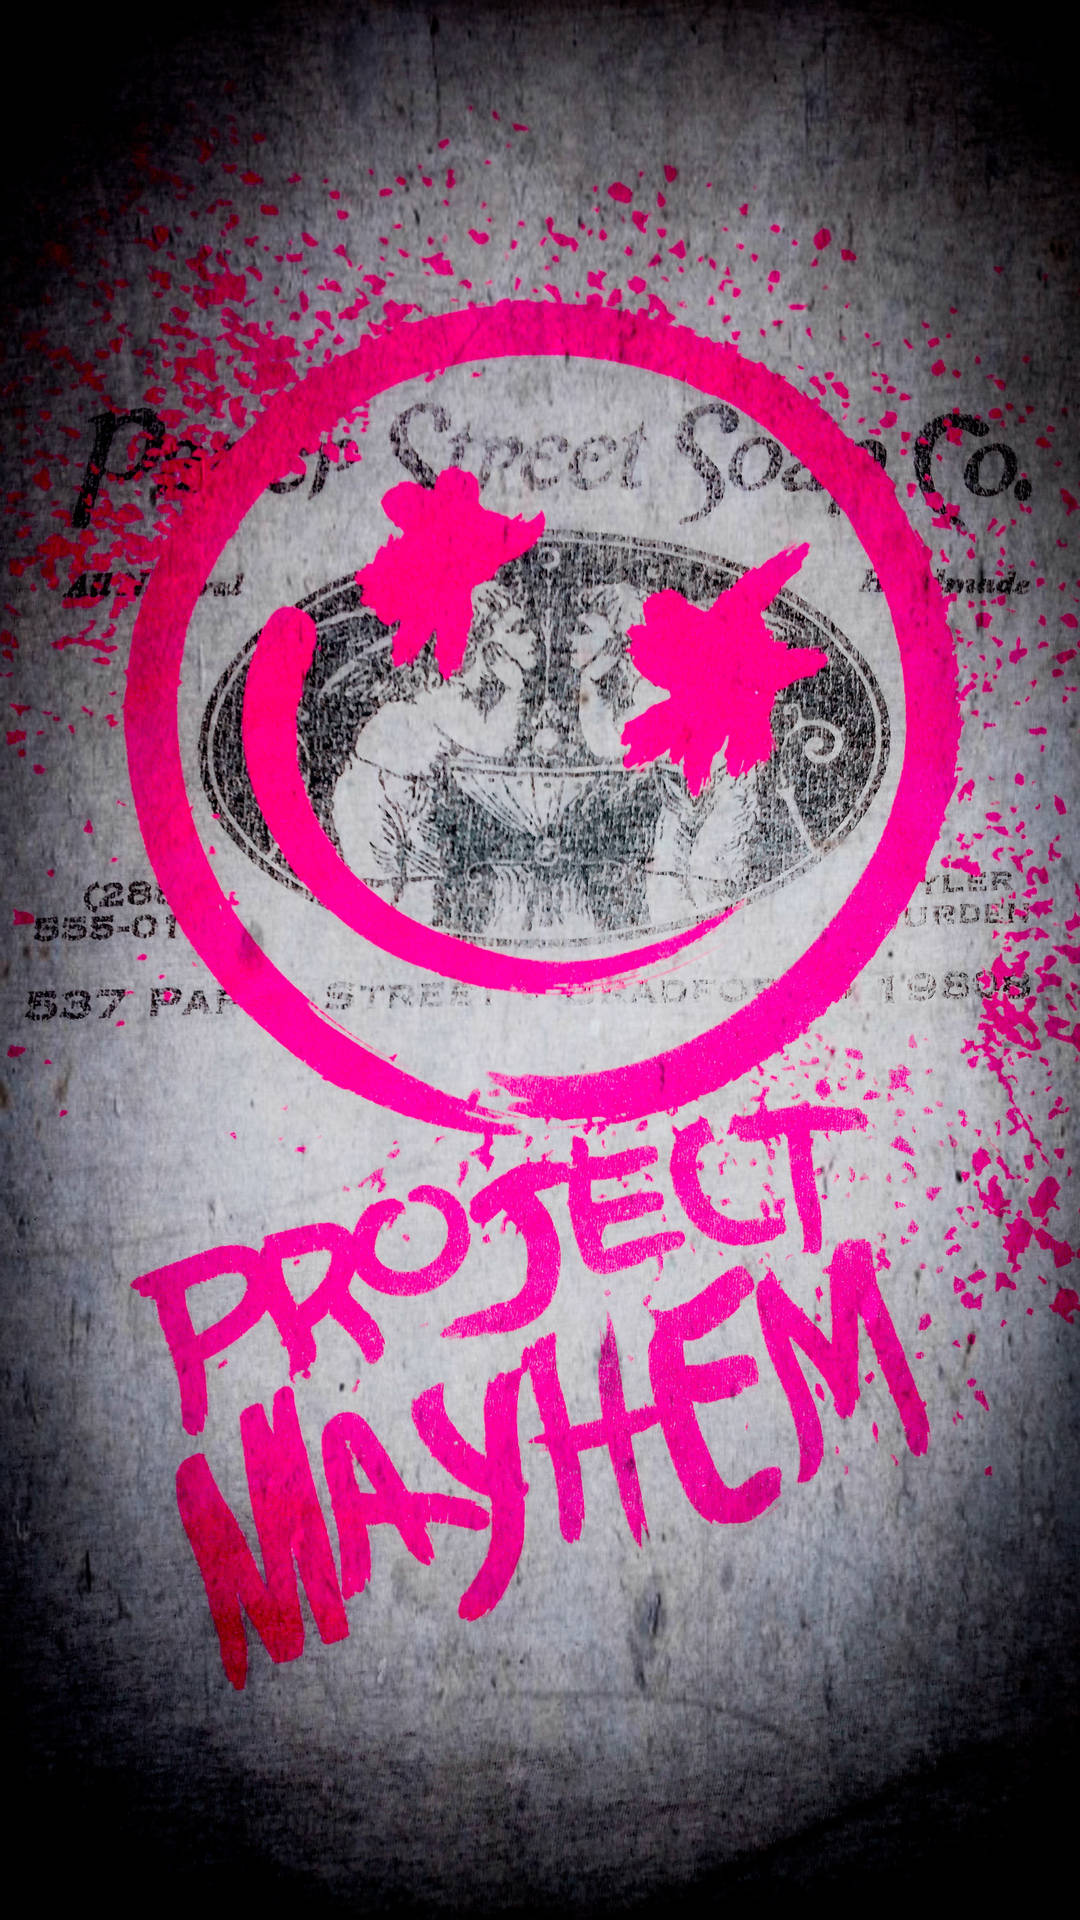 Fight Club Project Mayhem Wallpaper